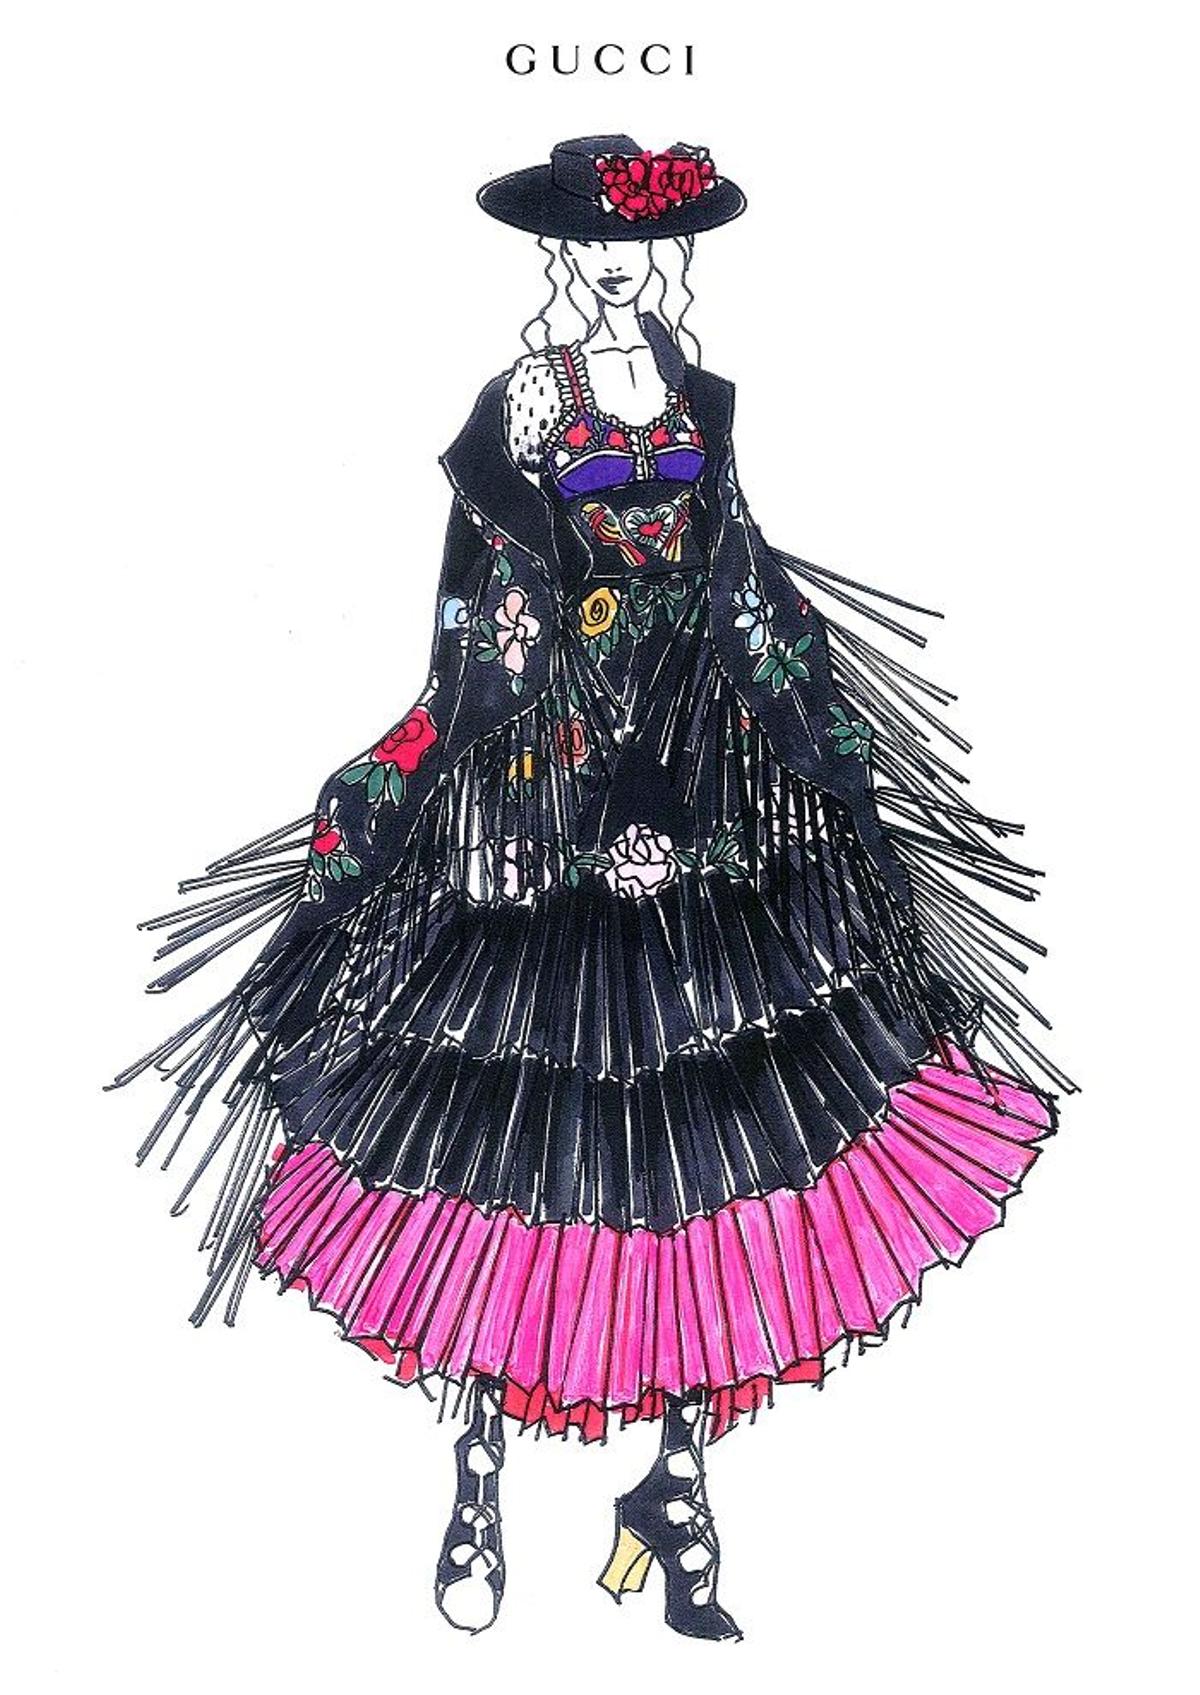 Boceto del traje flamenco de Gucci que luce Madonna en su gira